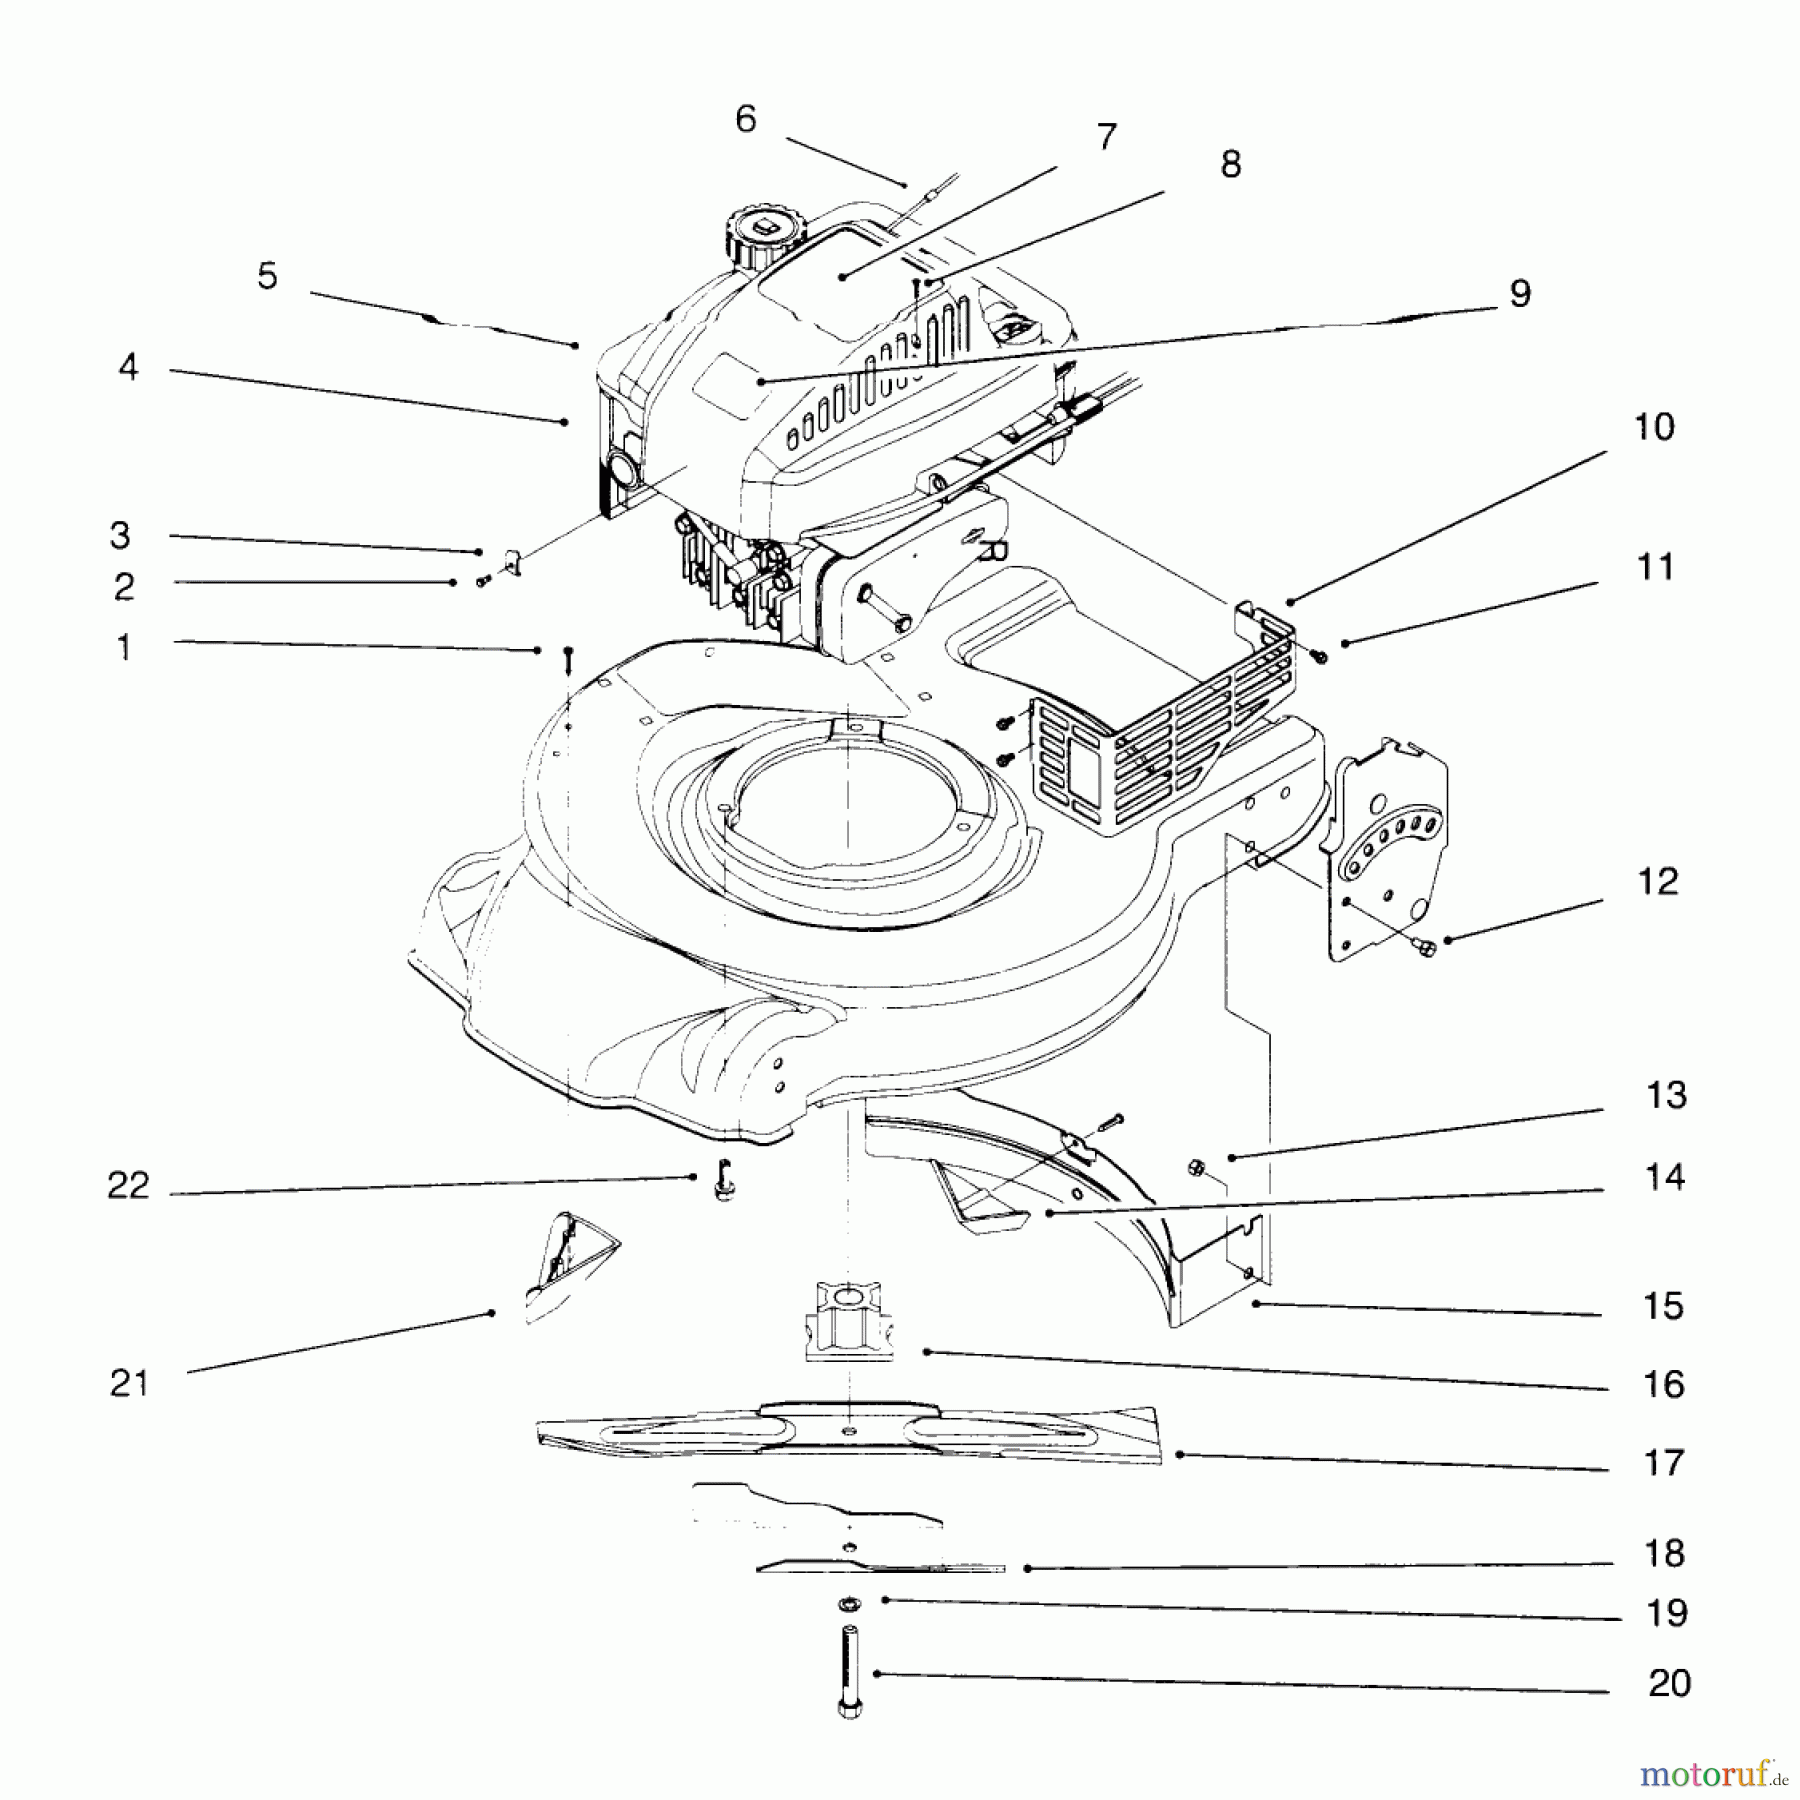  Toro Neu Mowers, Walk-Behind Seite 1 20441 - Toro Lawnmower, 1996 (6900001-6999999) ENGINE ASSEMBLY #2